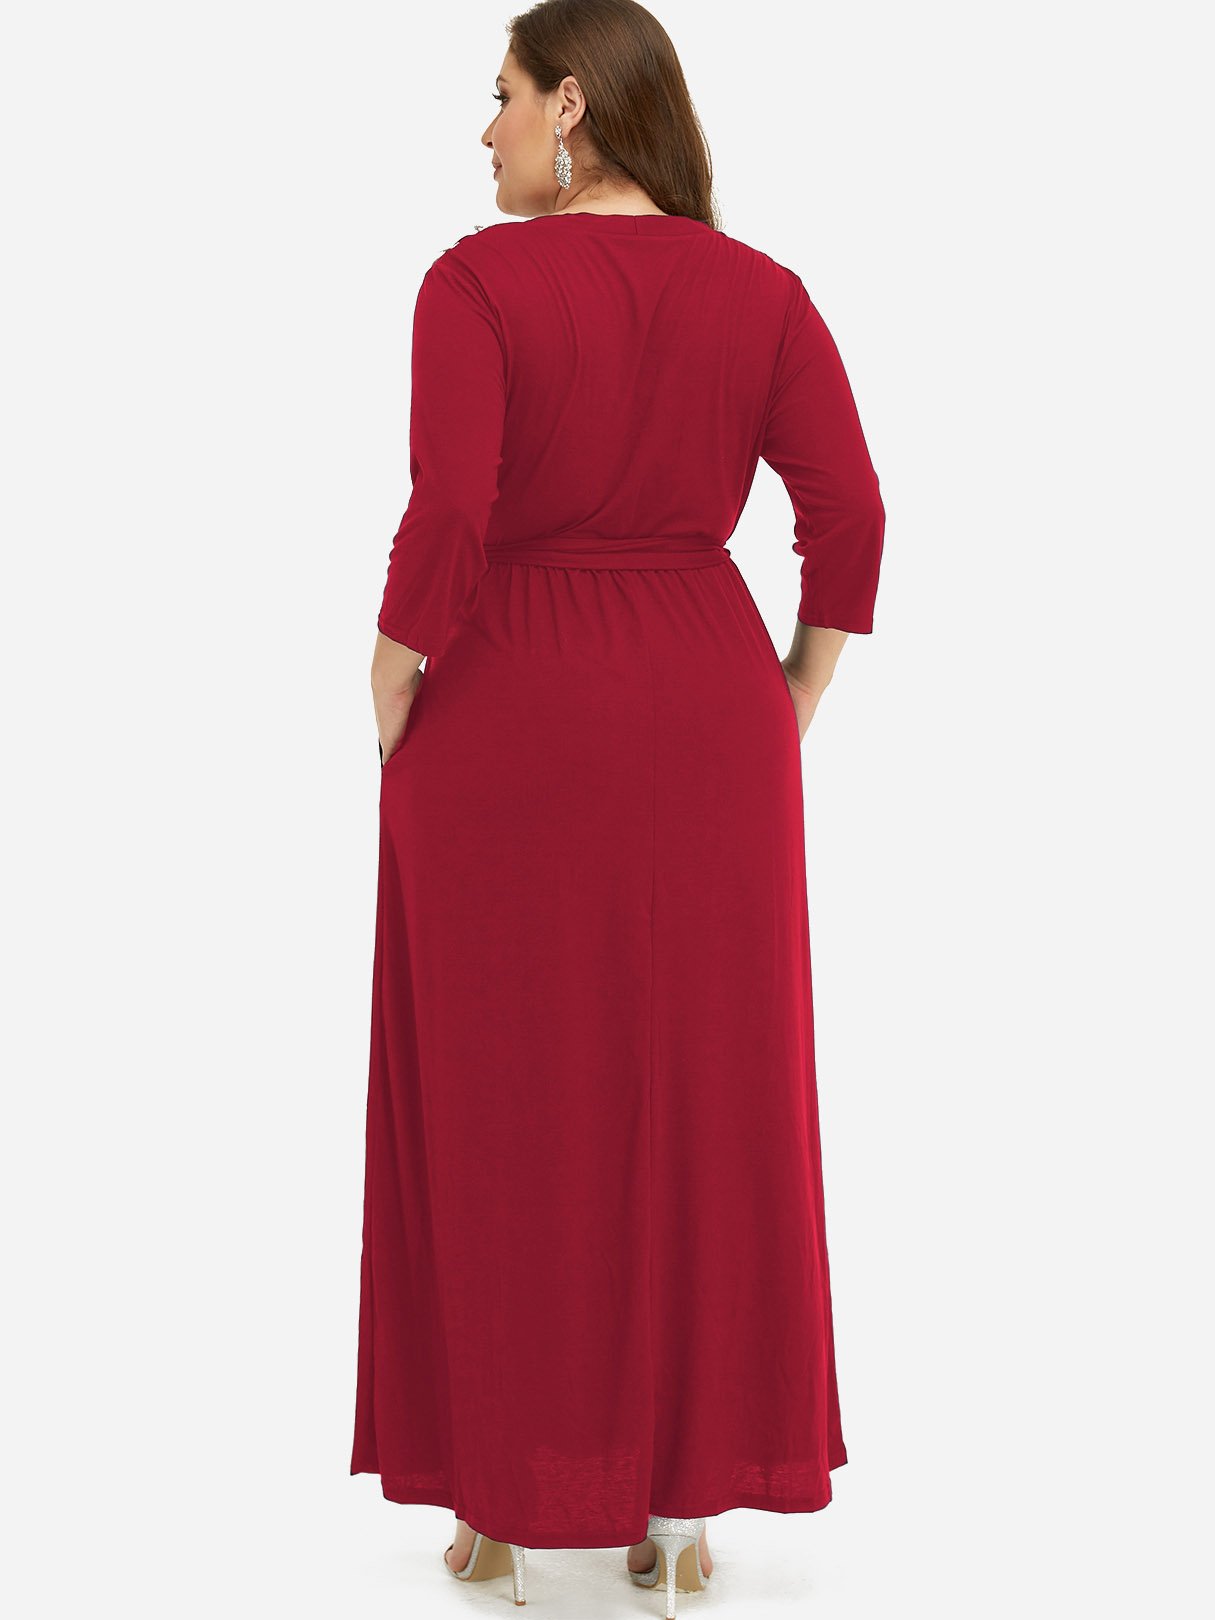 Custom Plus Size Dresses For Women